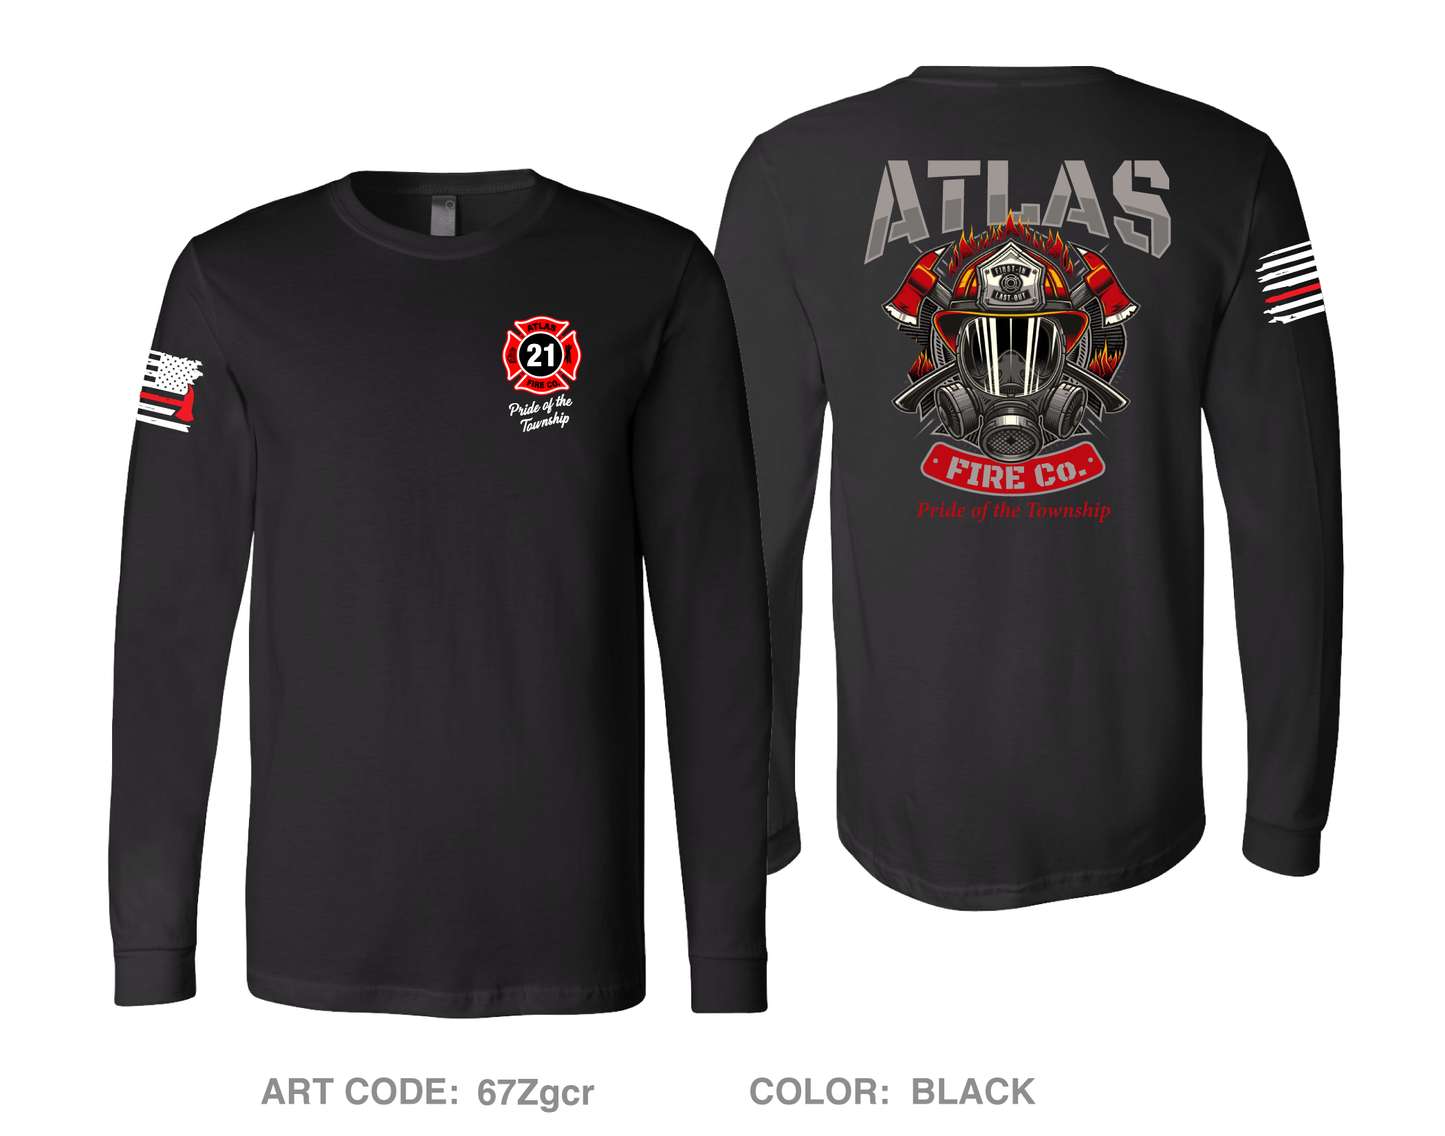 Atlas Fire Co. Comfort Men's Cotton LS Tee - 67Zgcr